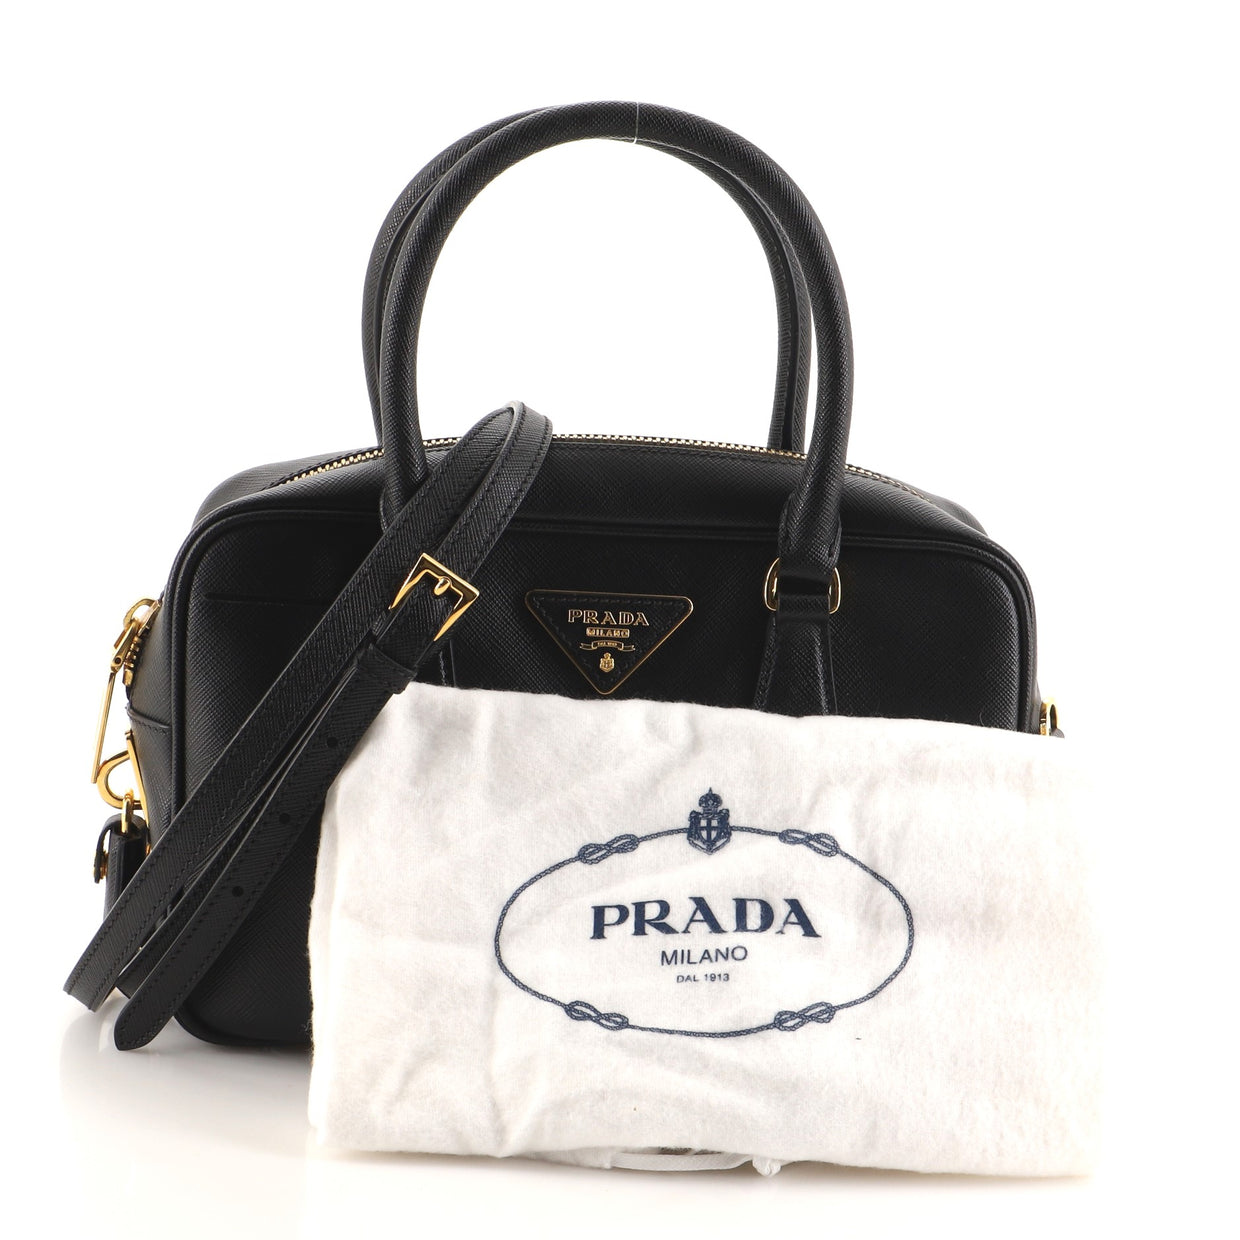 Prada Convertible Bauletto Bag Saffiano Leather Small Black 96992145